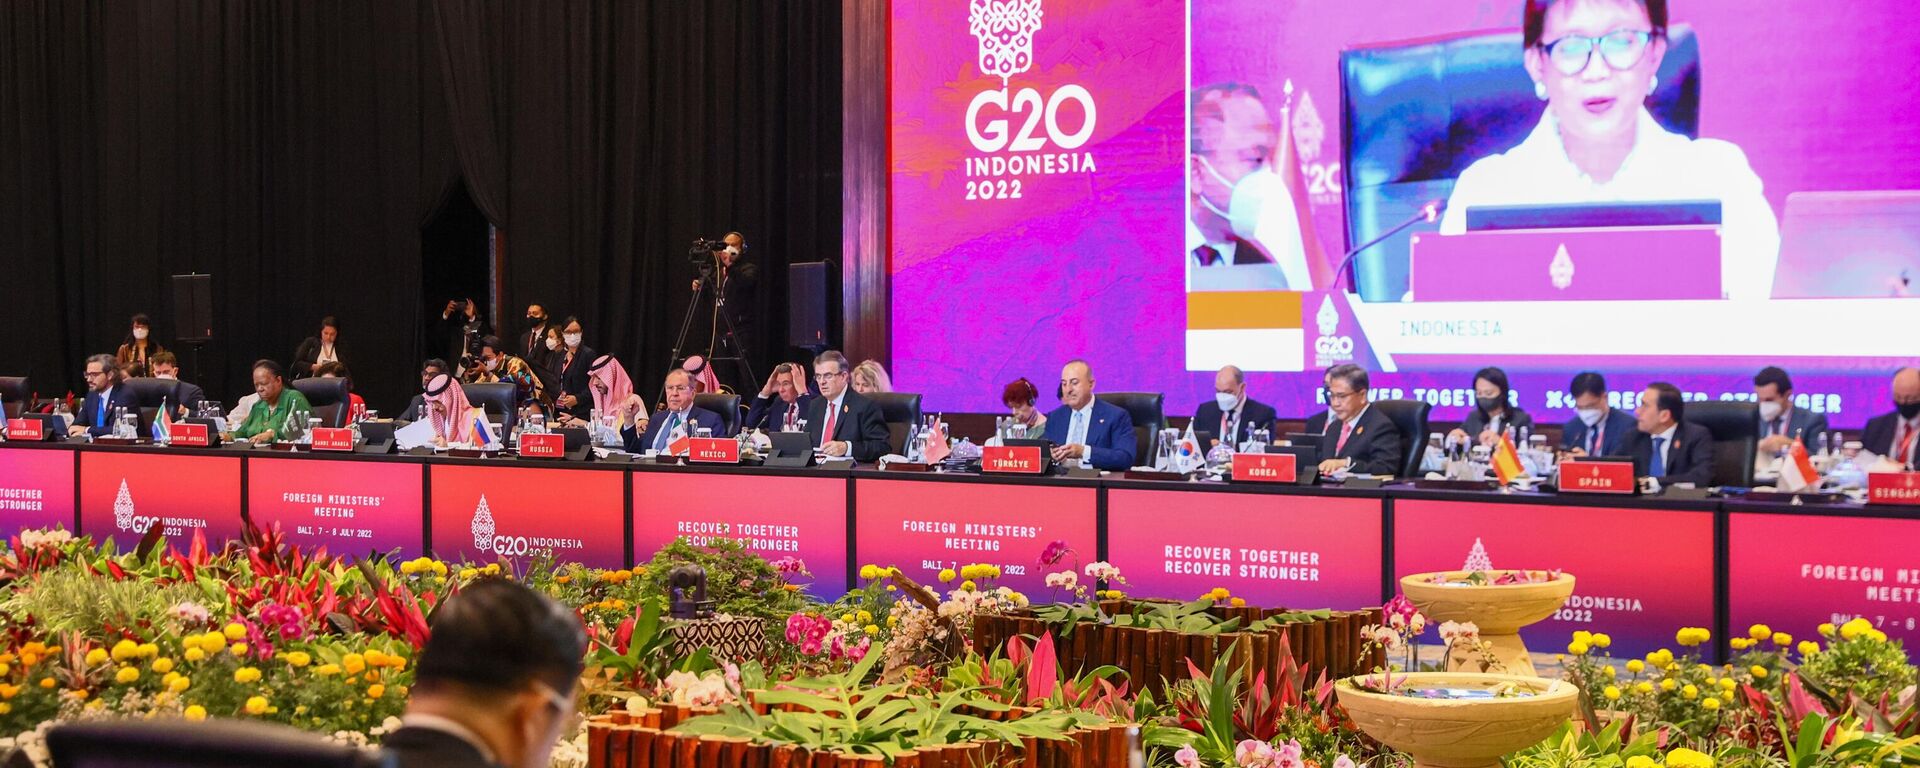 Funcionários participam da sessão de abertura da Reunião de Ministros das Relações Exteriores do G20 na ilha de Bali, na Indonésia (foto divulgada pelo Ministério das Relações Exteriores da Rússia) - Sputnik Brasil, 1920, 24.09.2022